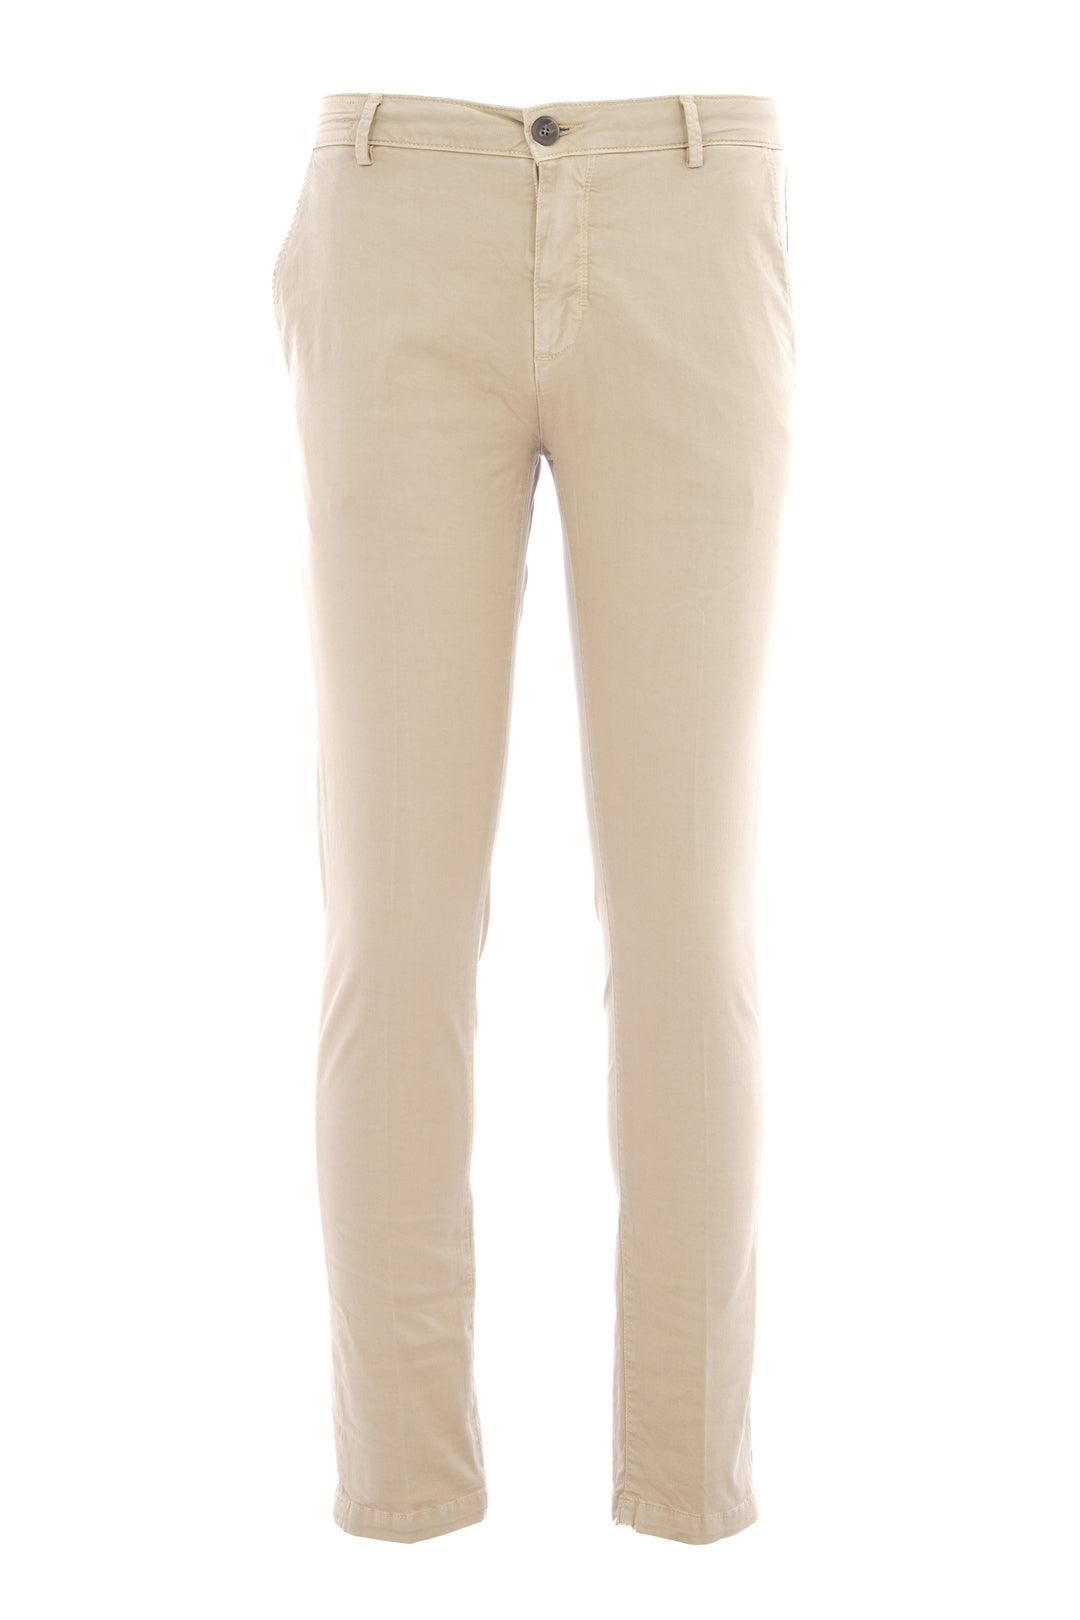 YAN SIMMON Pantalone cinque tasche in gabardina di cotone elasticizzato beige - Mancinelli 1954